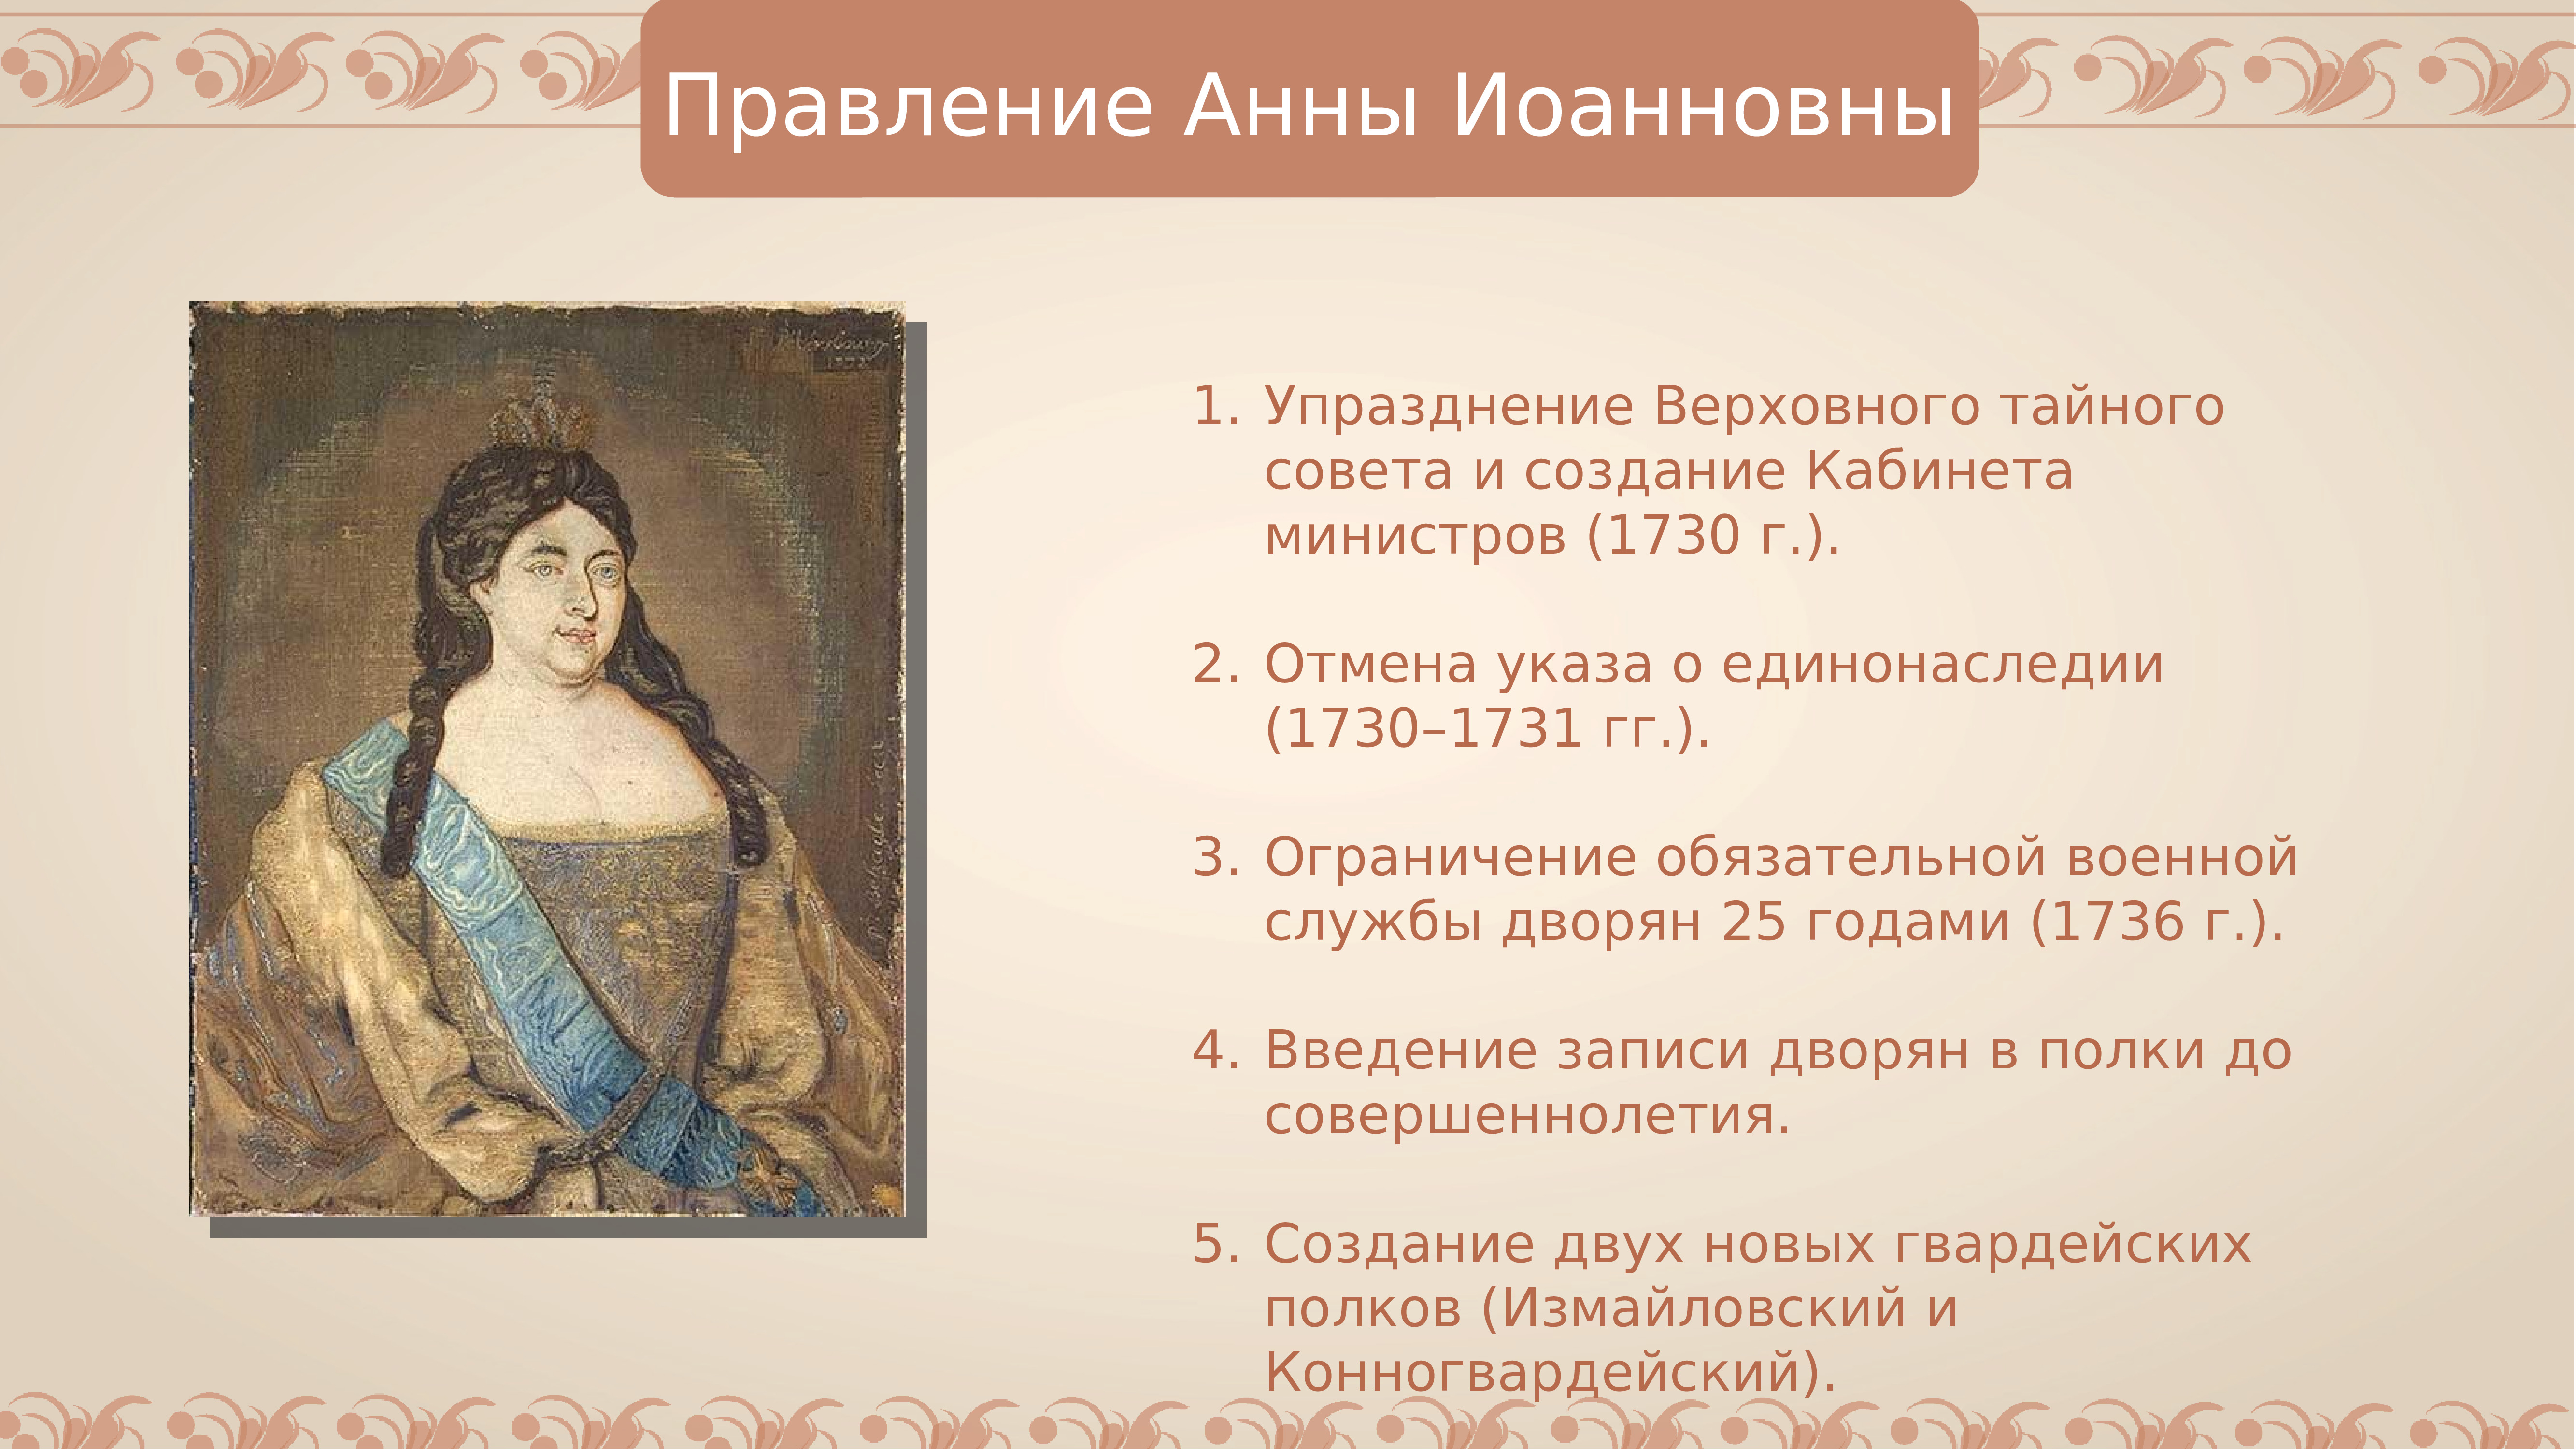 Сокращение срока дворянской службы до 25 лет. Правление Анны Иоанновны (1730-1740):. События правления Анны Иоанновны.